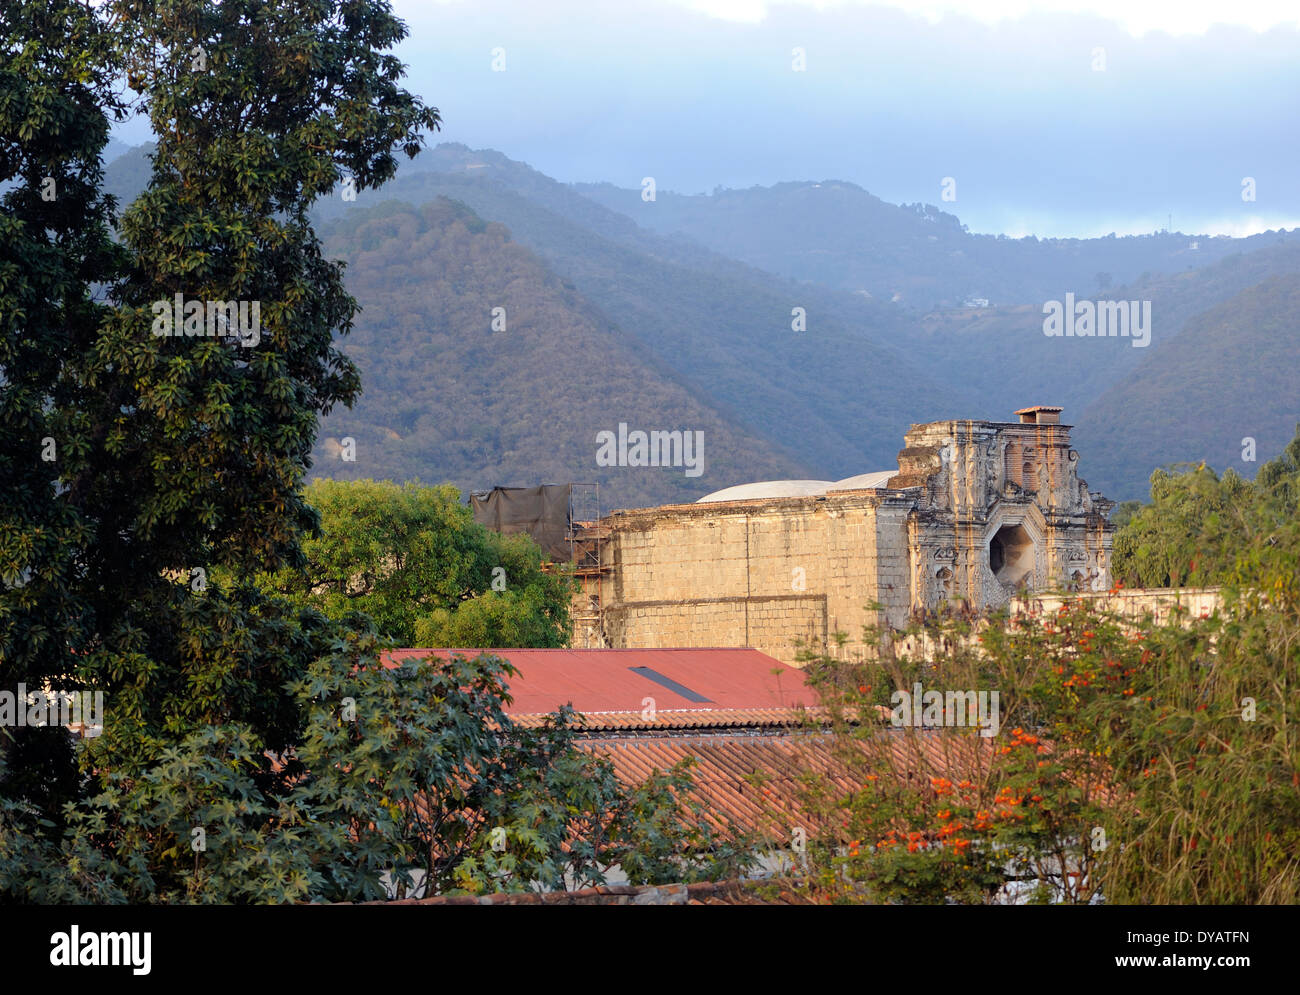 Les ruines du Convento Santa Clara avec une fenêtre octogonale dans la façade sud. Antigua Guatemala, République du Guatemala. Banque D'Images